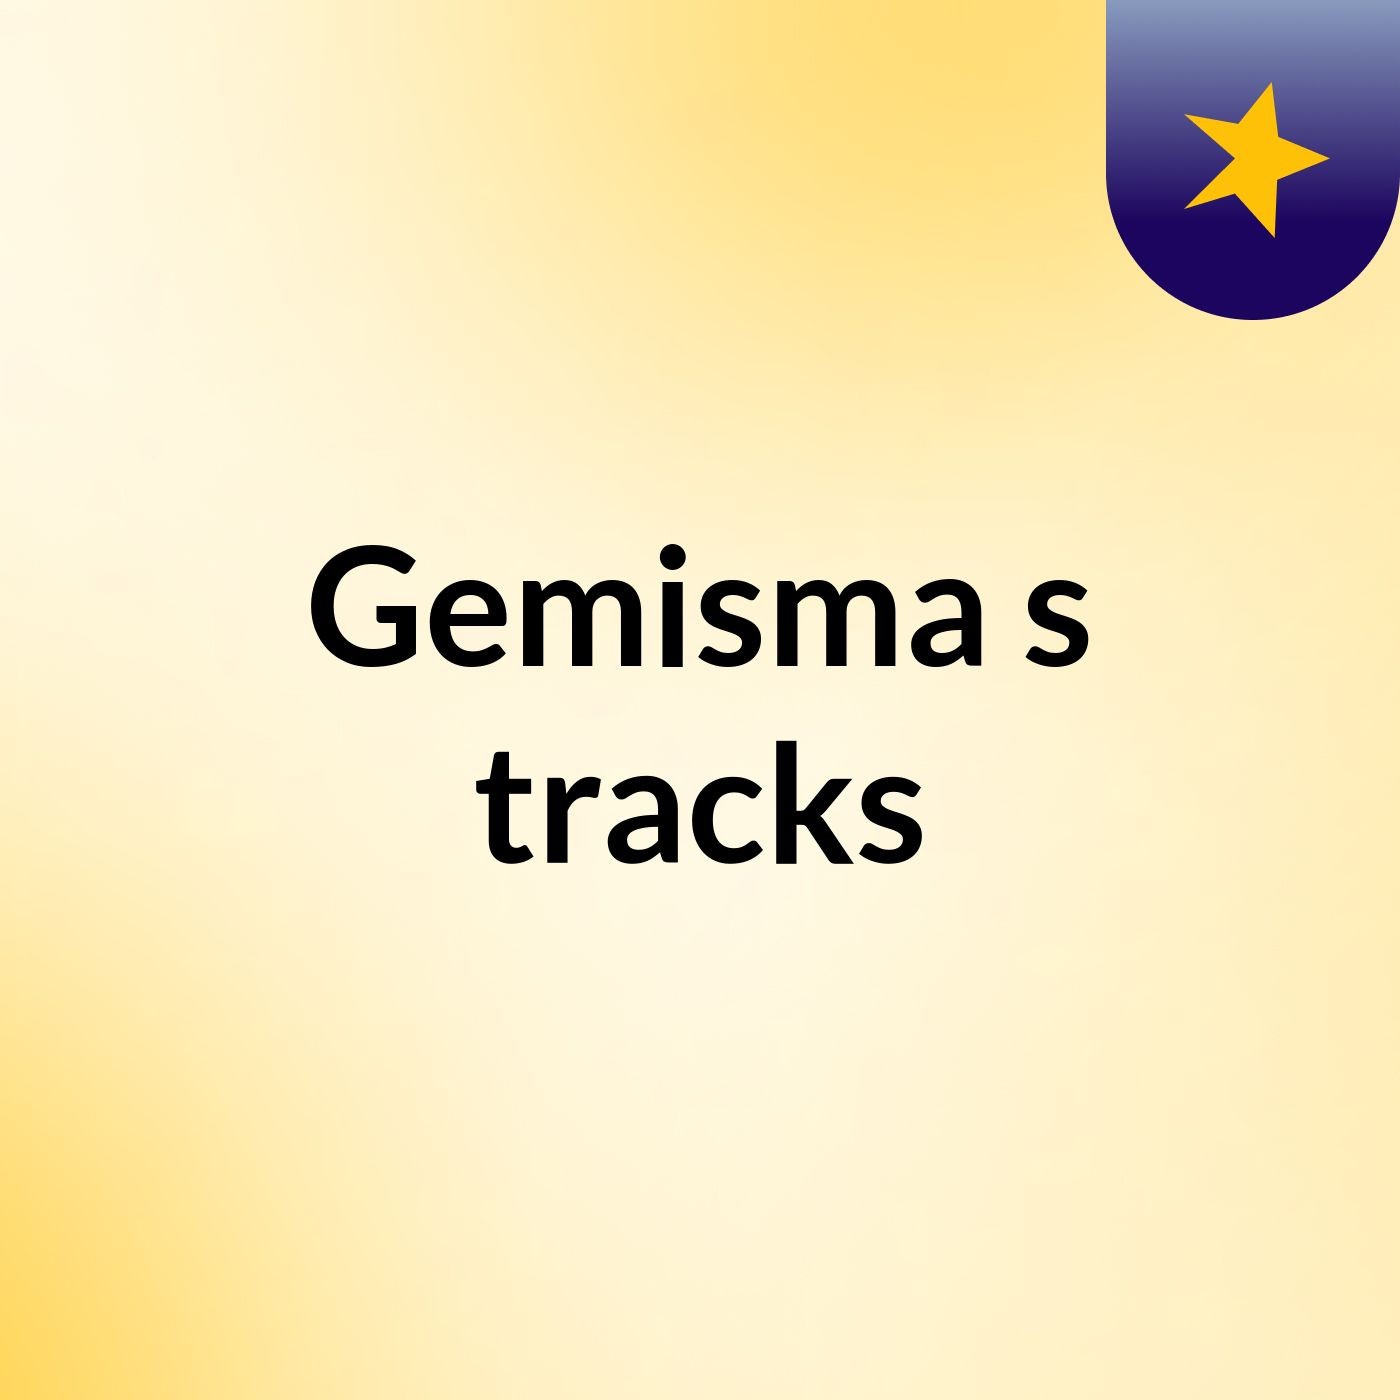 Gemisma's tracks